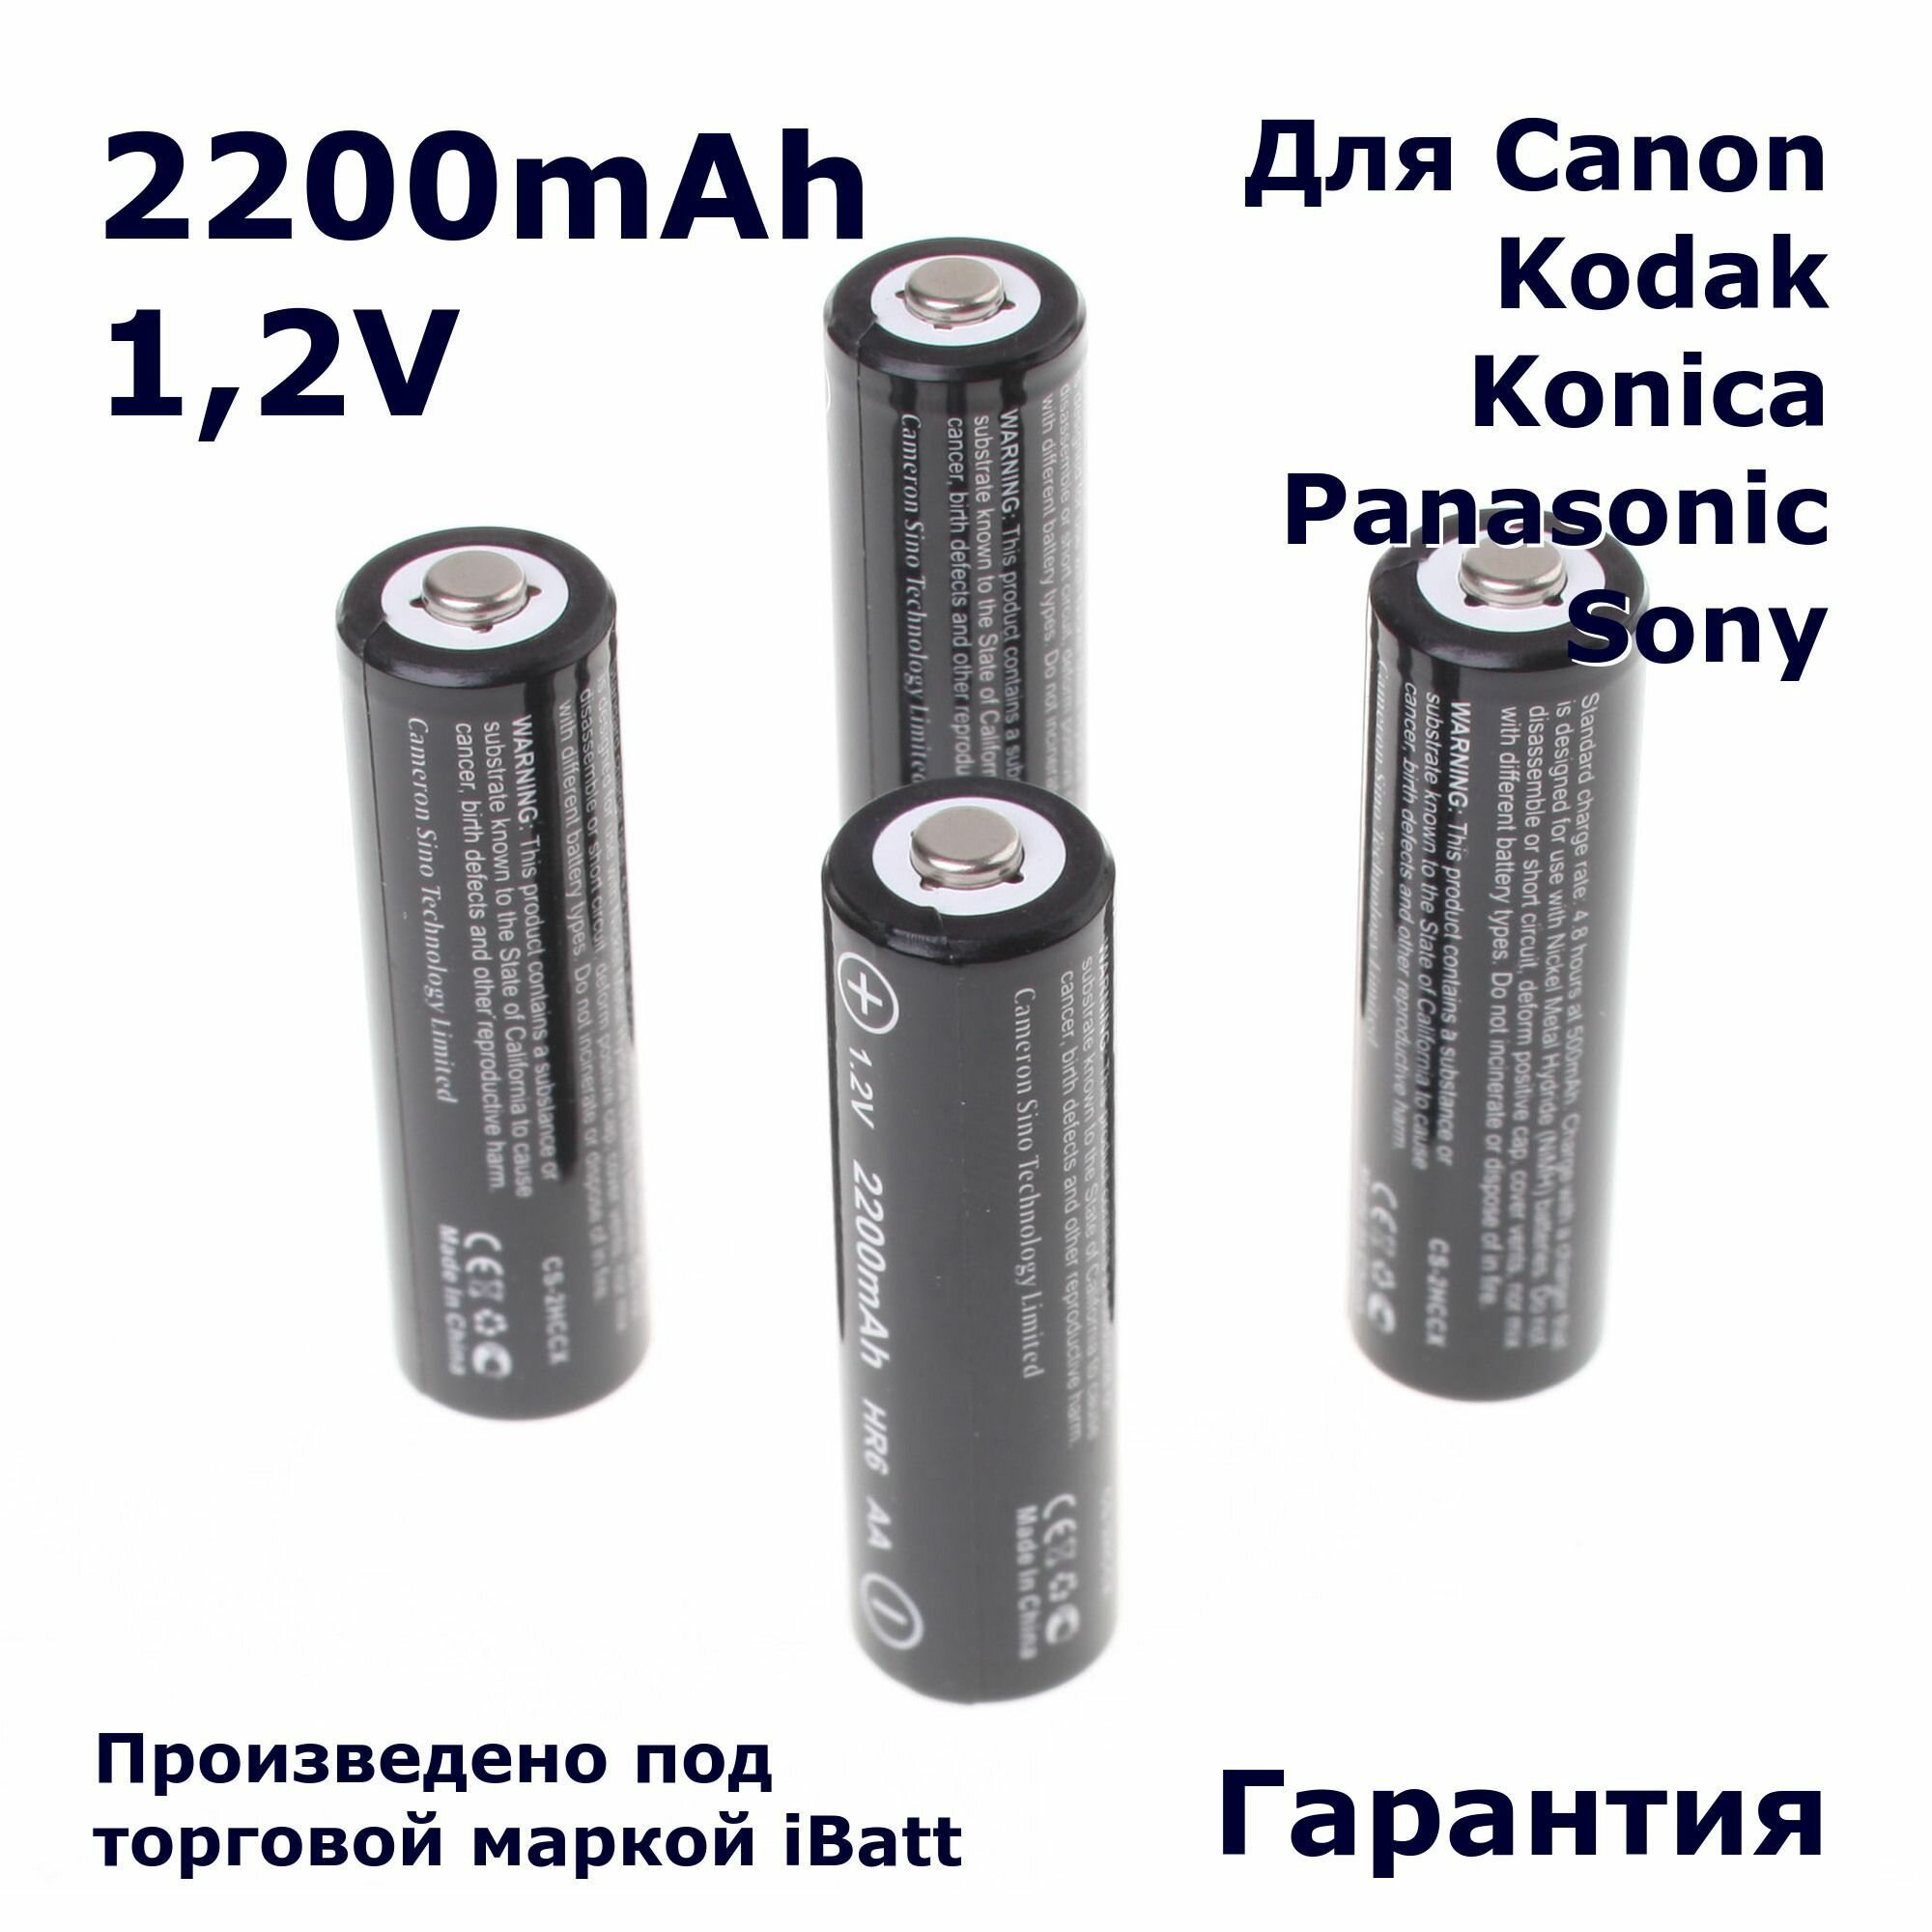 Аккумуляторная батарея iBatt iB-T1-F419 2200mAh, для камер PowerShot S5 IS PowerShot SX150 IS PowerShot SX20 IS PowerShot SX130 IS PowerShot S3 IS PowerShot SX10 IS PowerShot SX120 IS PowerShot SX100 IS PowerShot A480